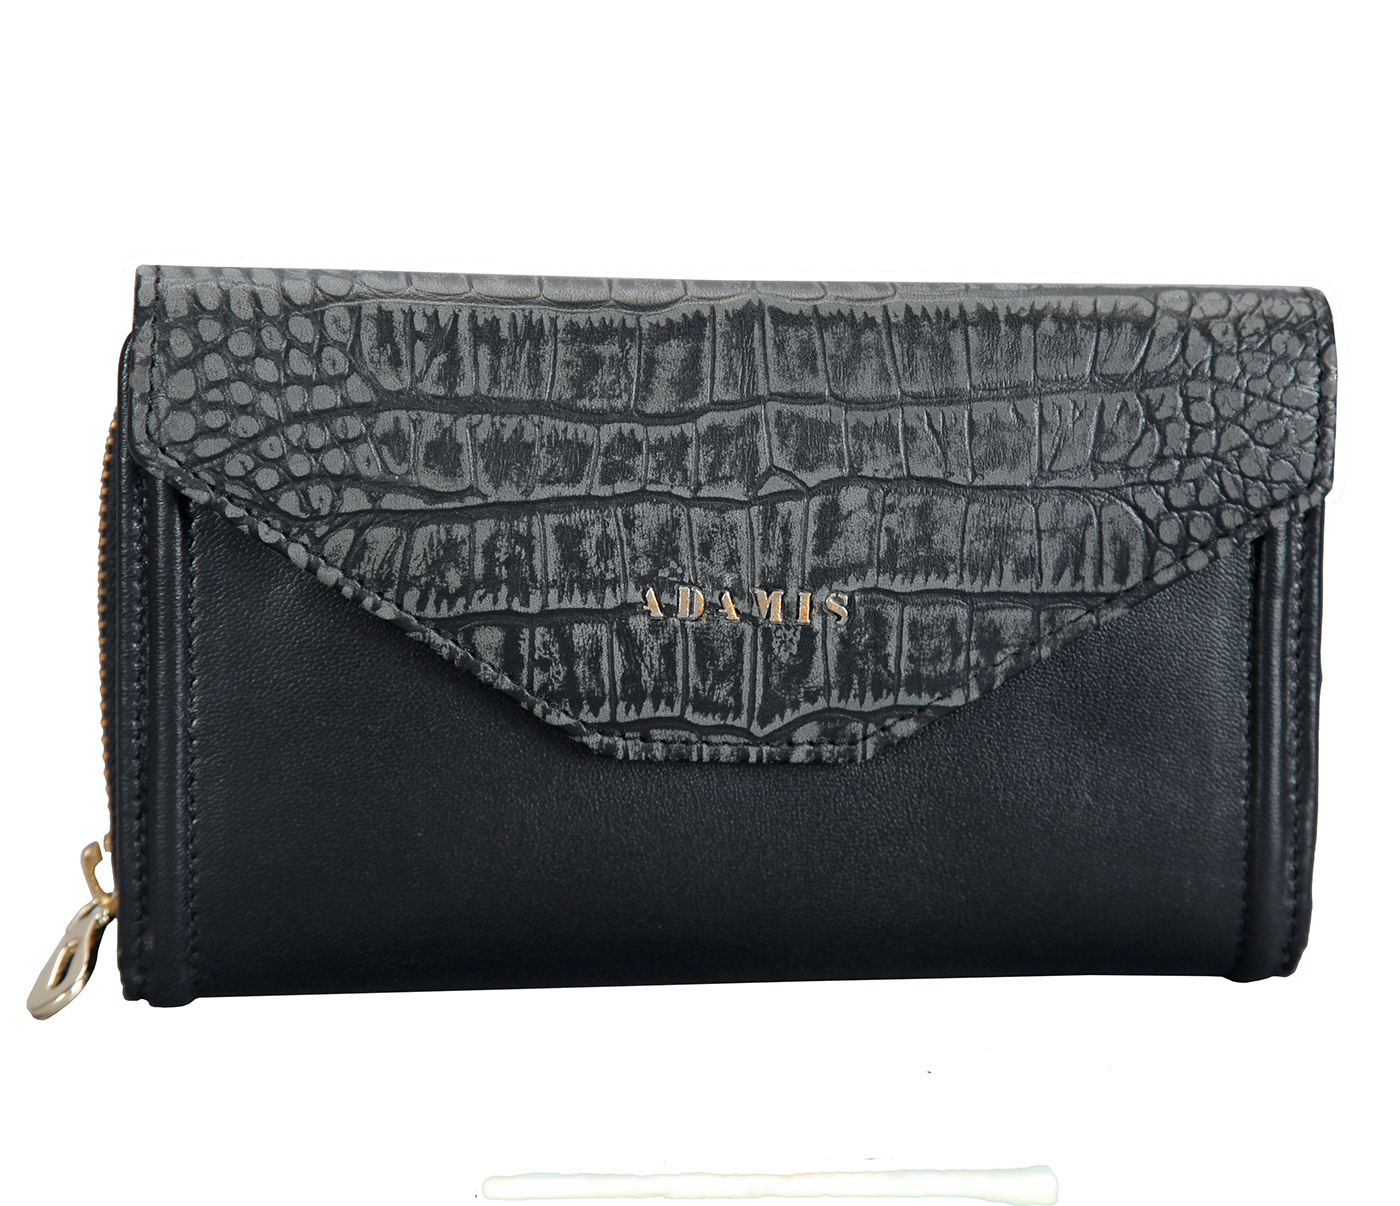 Wallet-Carolina-Women's bifold wallet in Genuine Leather - Black